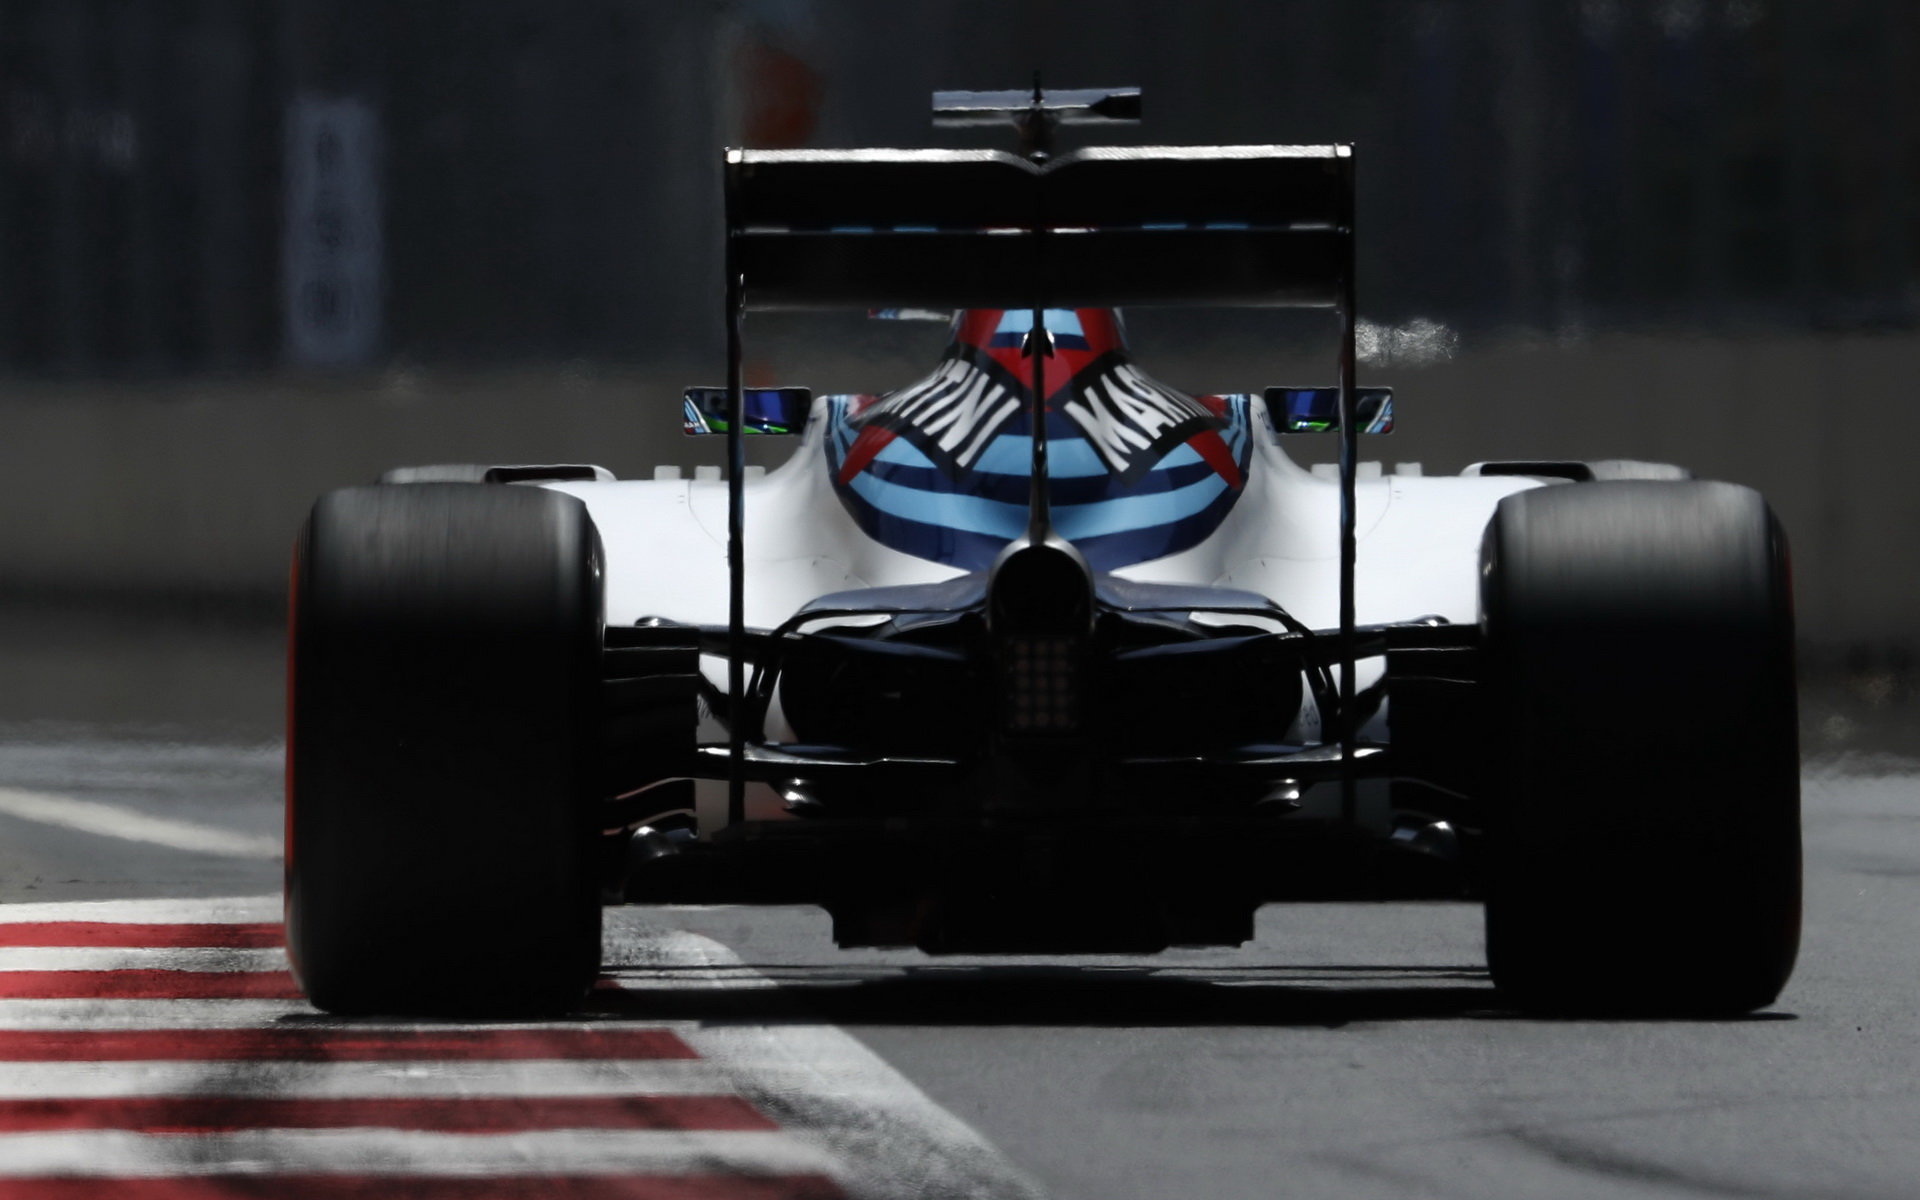 Williams by se chtěl příští rok dostat na úroveň Mercedesu a Ferrari